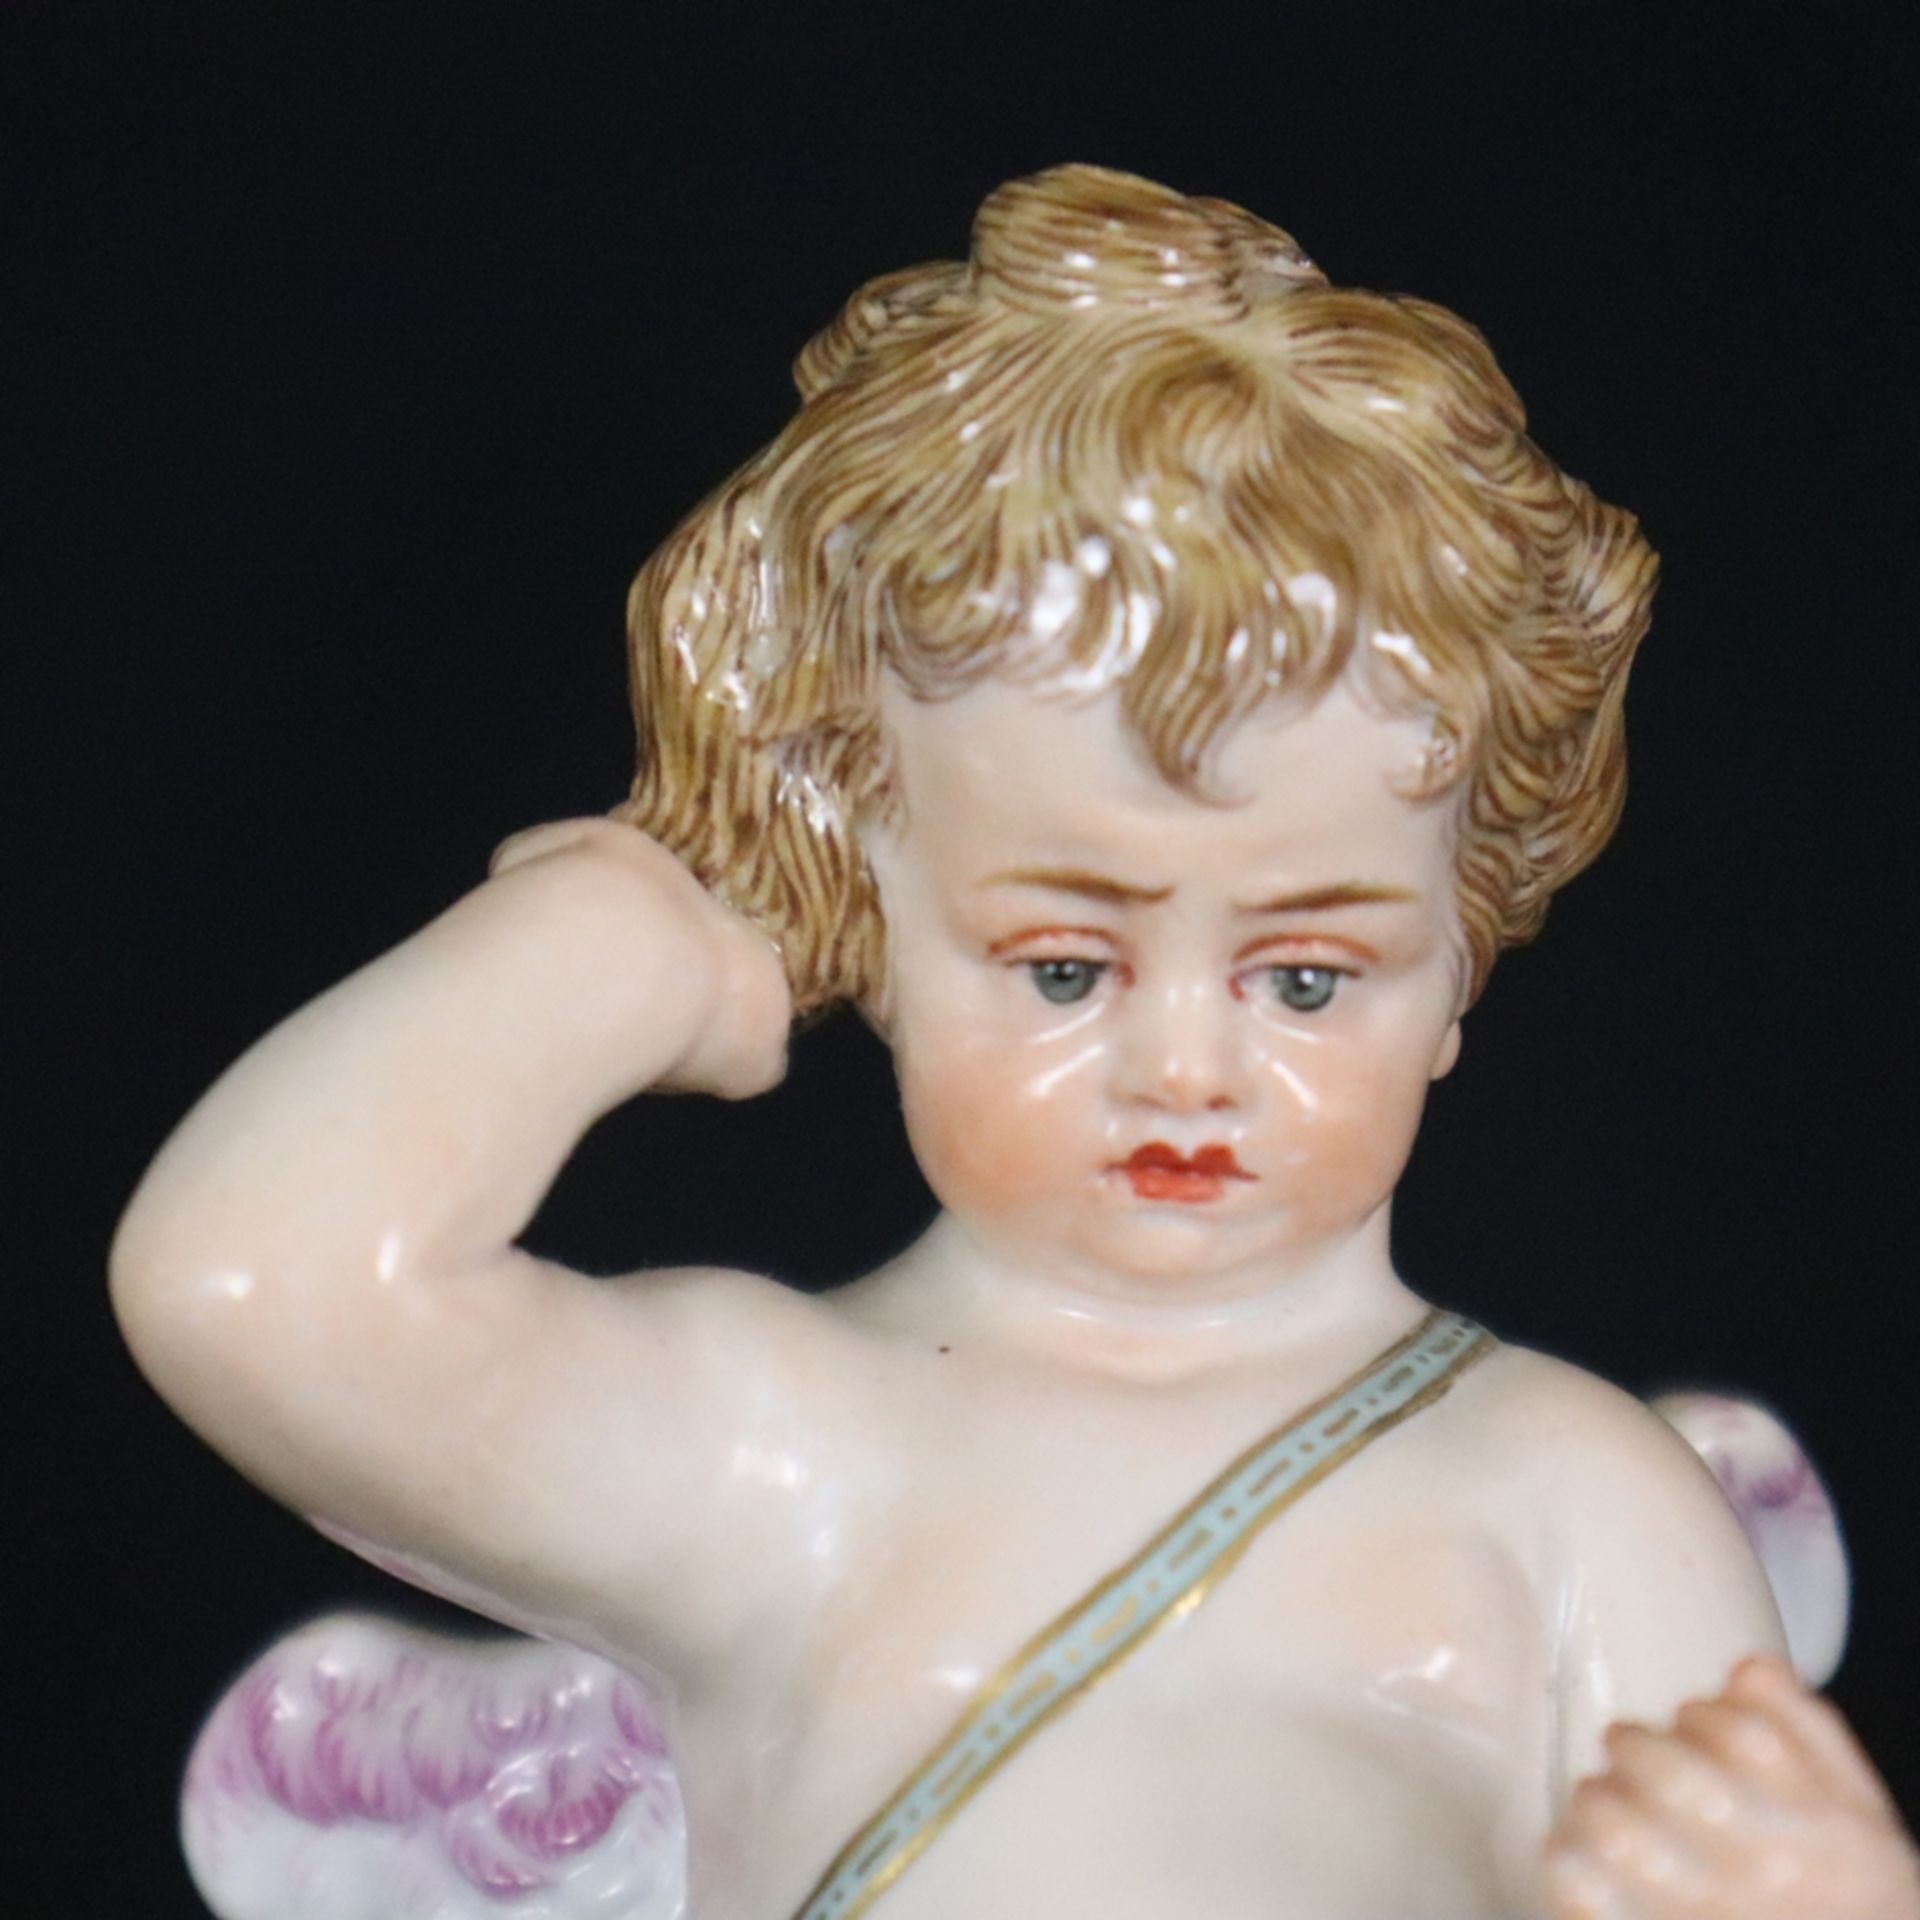 Porzellanfigur "Amor bekommt einen Korb und kratzt sich enttäuscht hinterm Ohr" - Meissen, um 1900, - Bild 3 aus 10